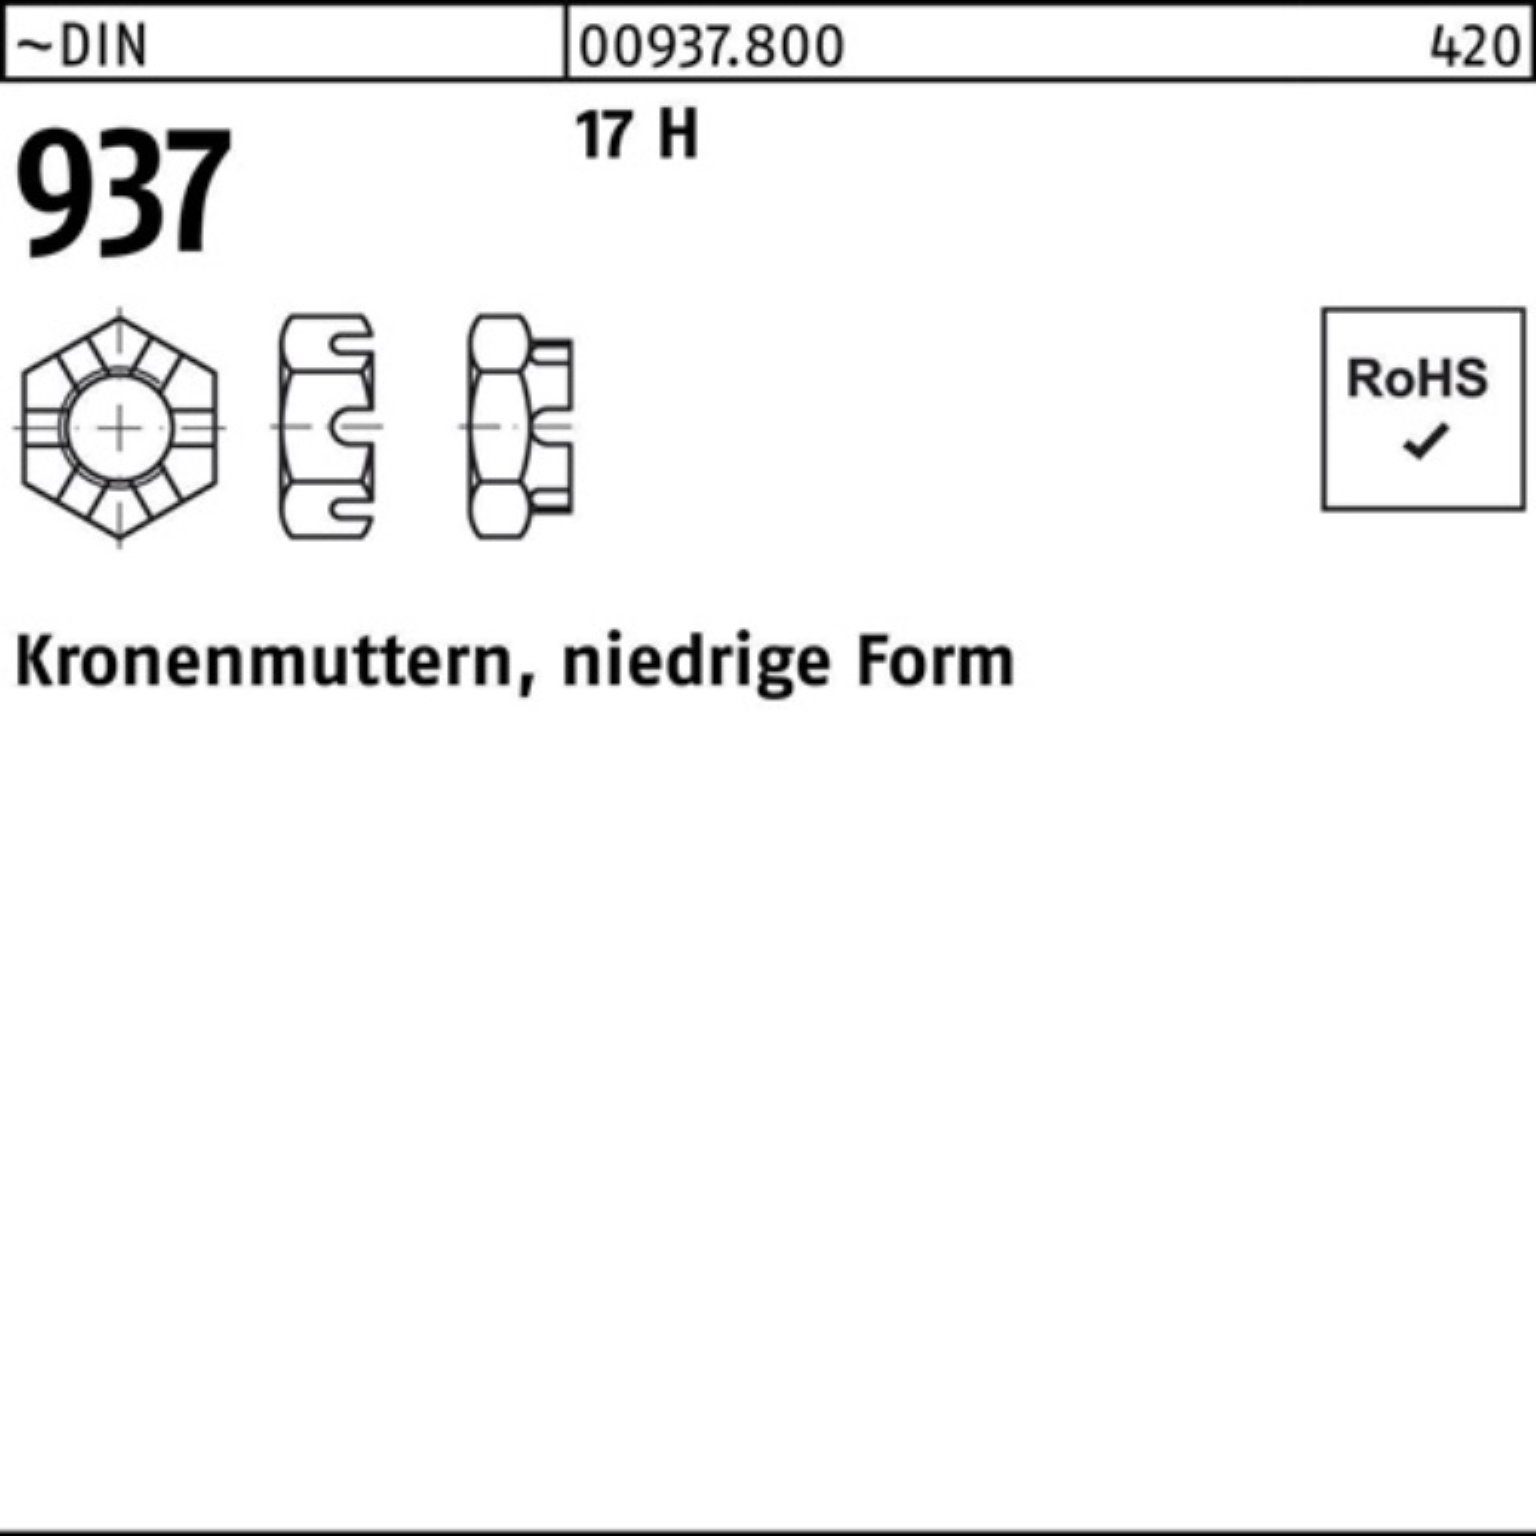 Reyher Kronenmutter 100er FormM24 25 17 niedrige Pack H Stück 937 Kronenmutter 9 DIN ~DIN